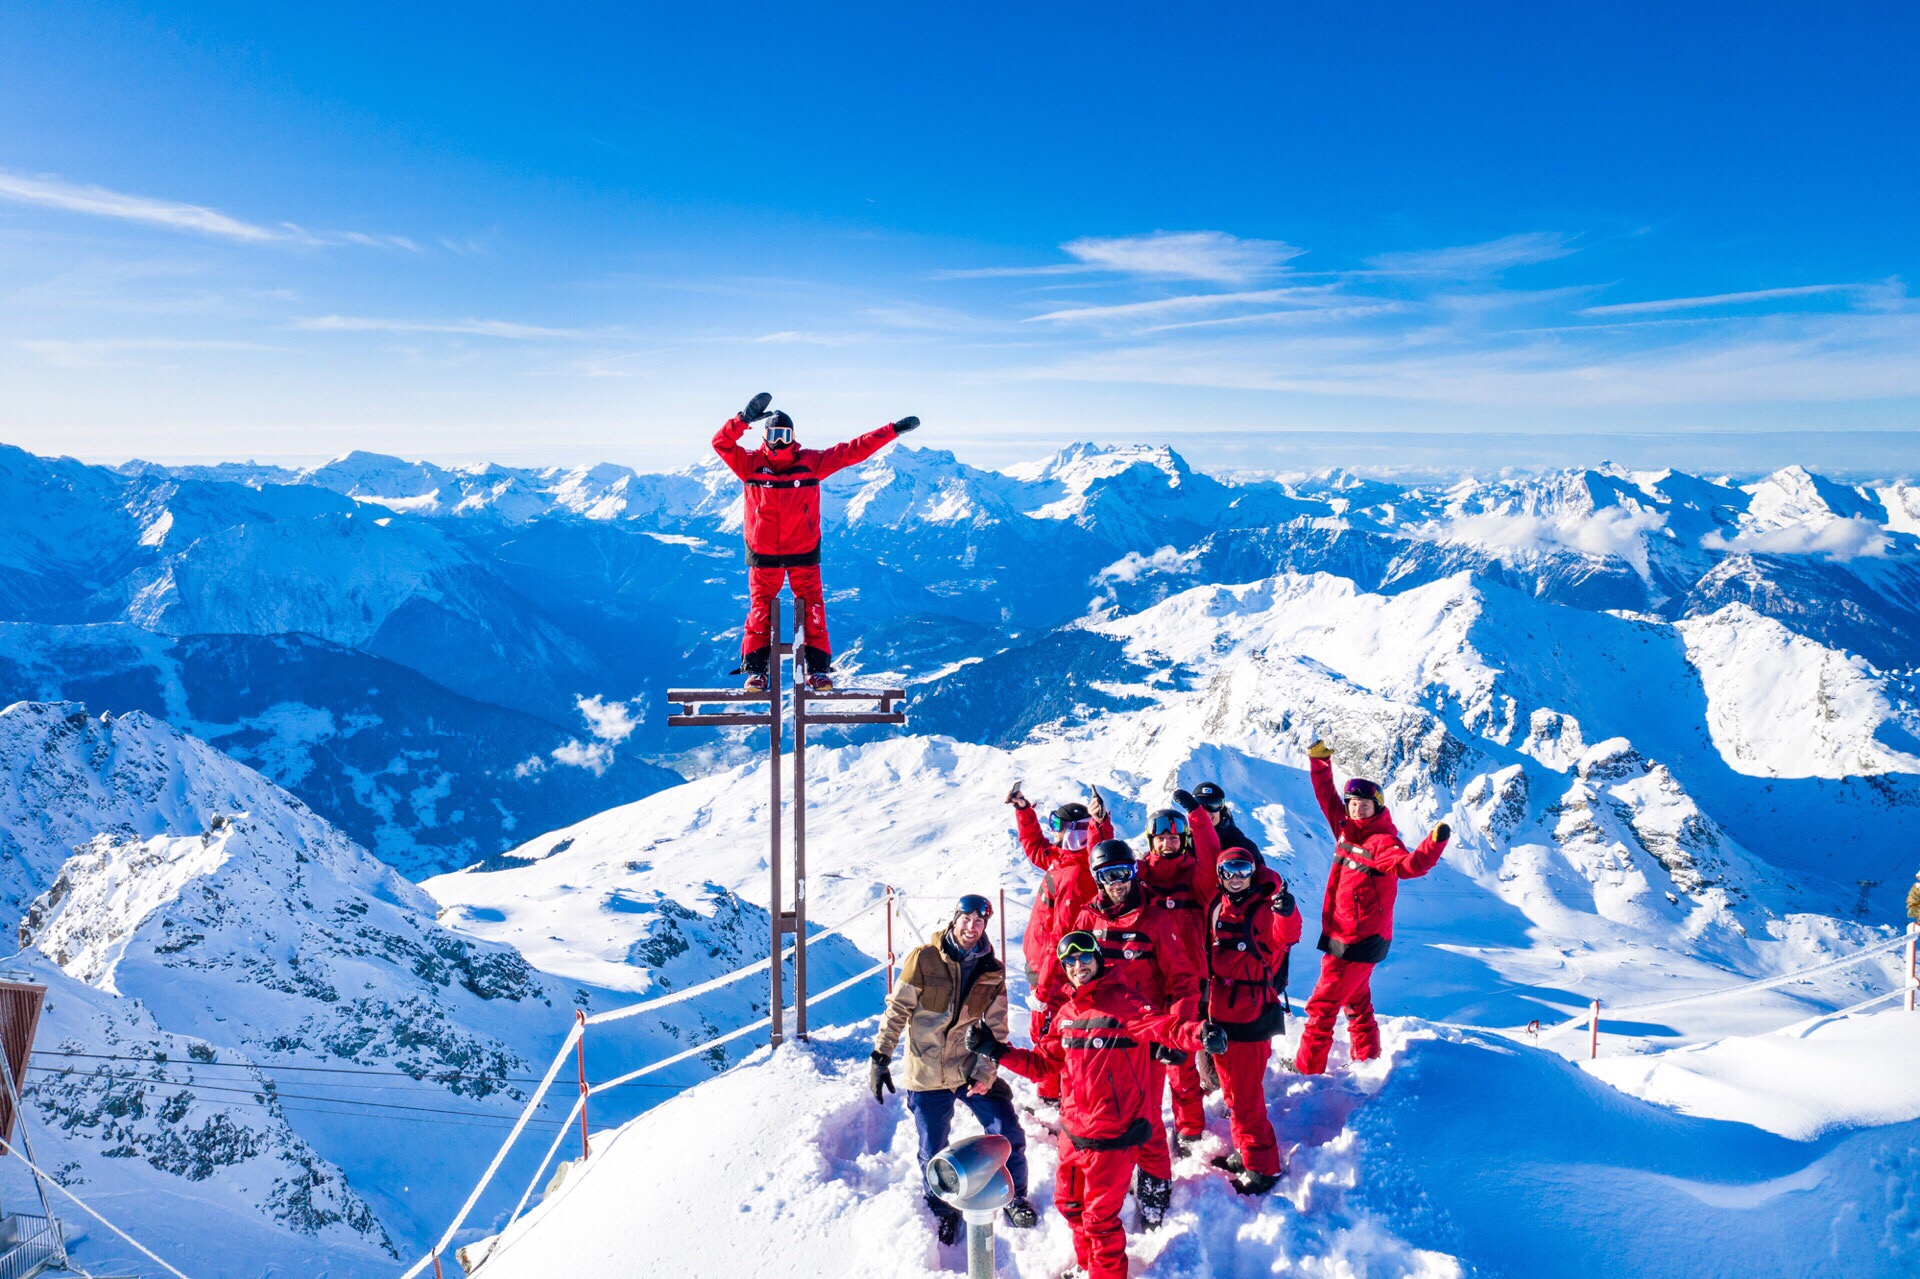 来  瑞士·欧洲 怎能不滑雪 ？更何况在  韦尔比耶滑雪场 这么美妙的小镇~！   ❄️你可能听说过